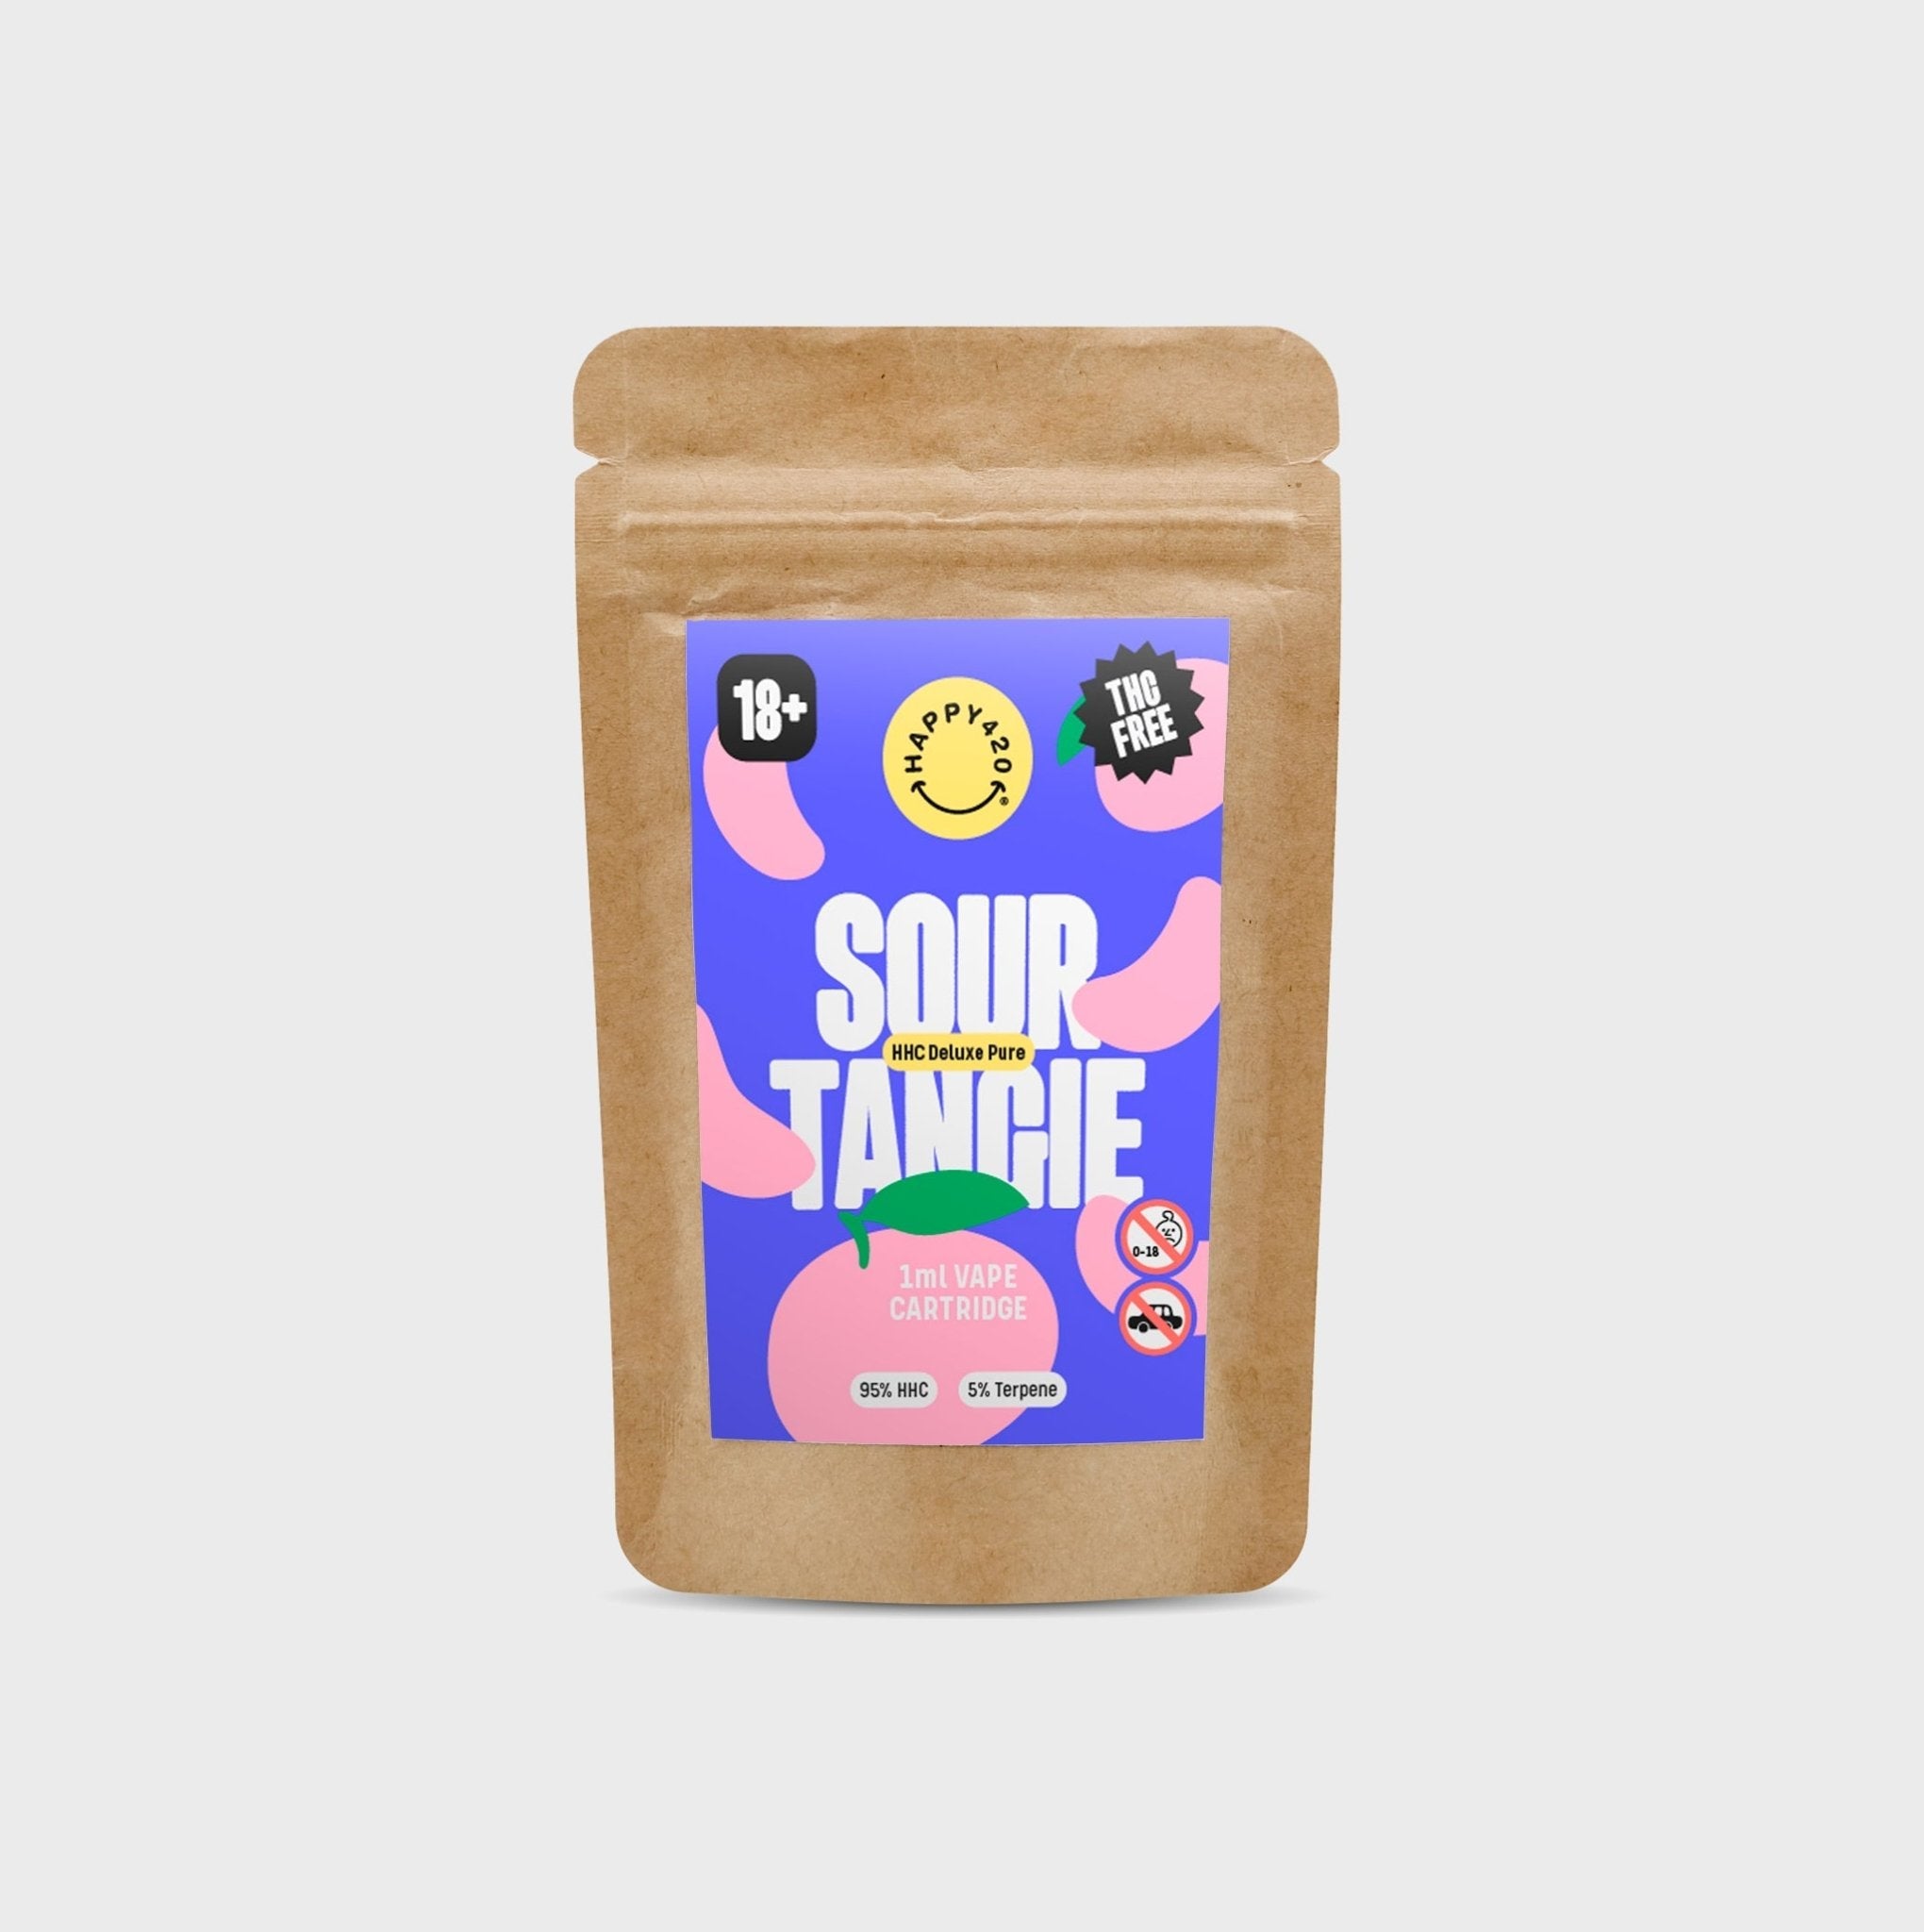 NOUVEAU ! 🍊 Deluxe Pure Sour Tangie - 95% HHC - Happy420.fr